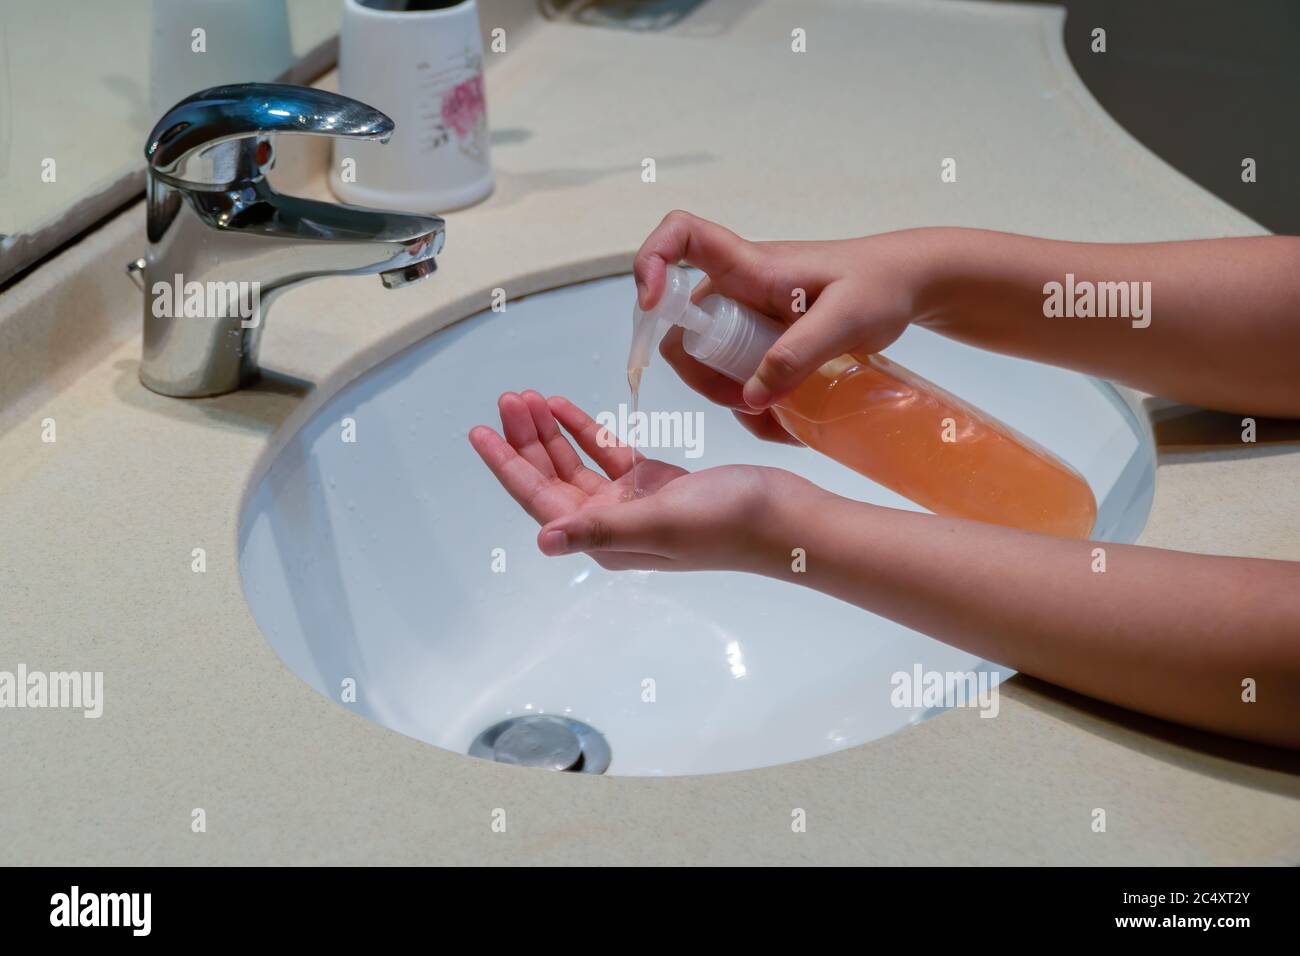 Un bambino che pompava sapone da un dispenser di bottiglie sul palmo per proteggerlo da germi, virus e malattie per rimanere pulito e igienico. Foto Stock